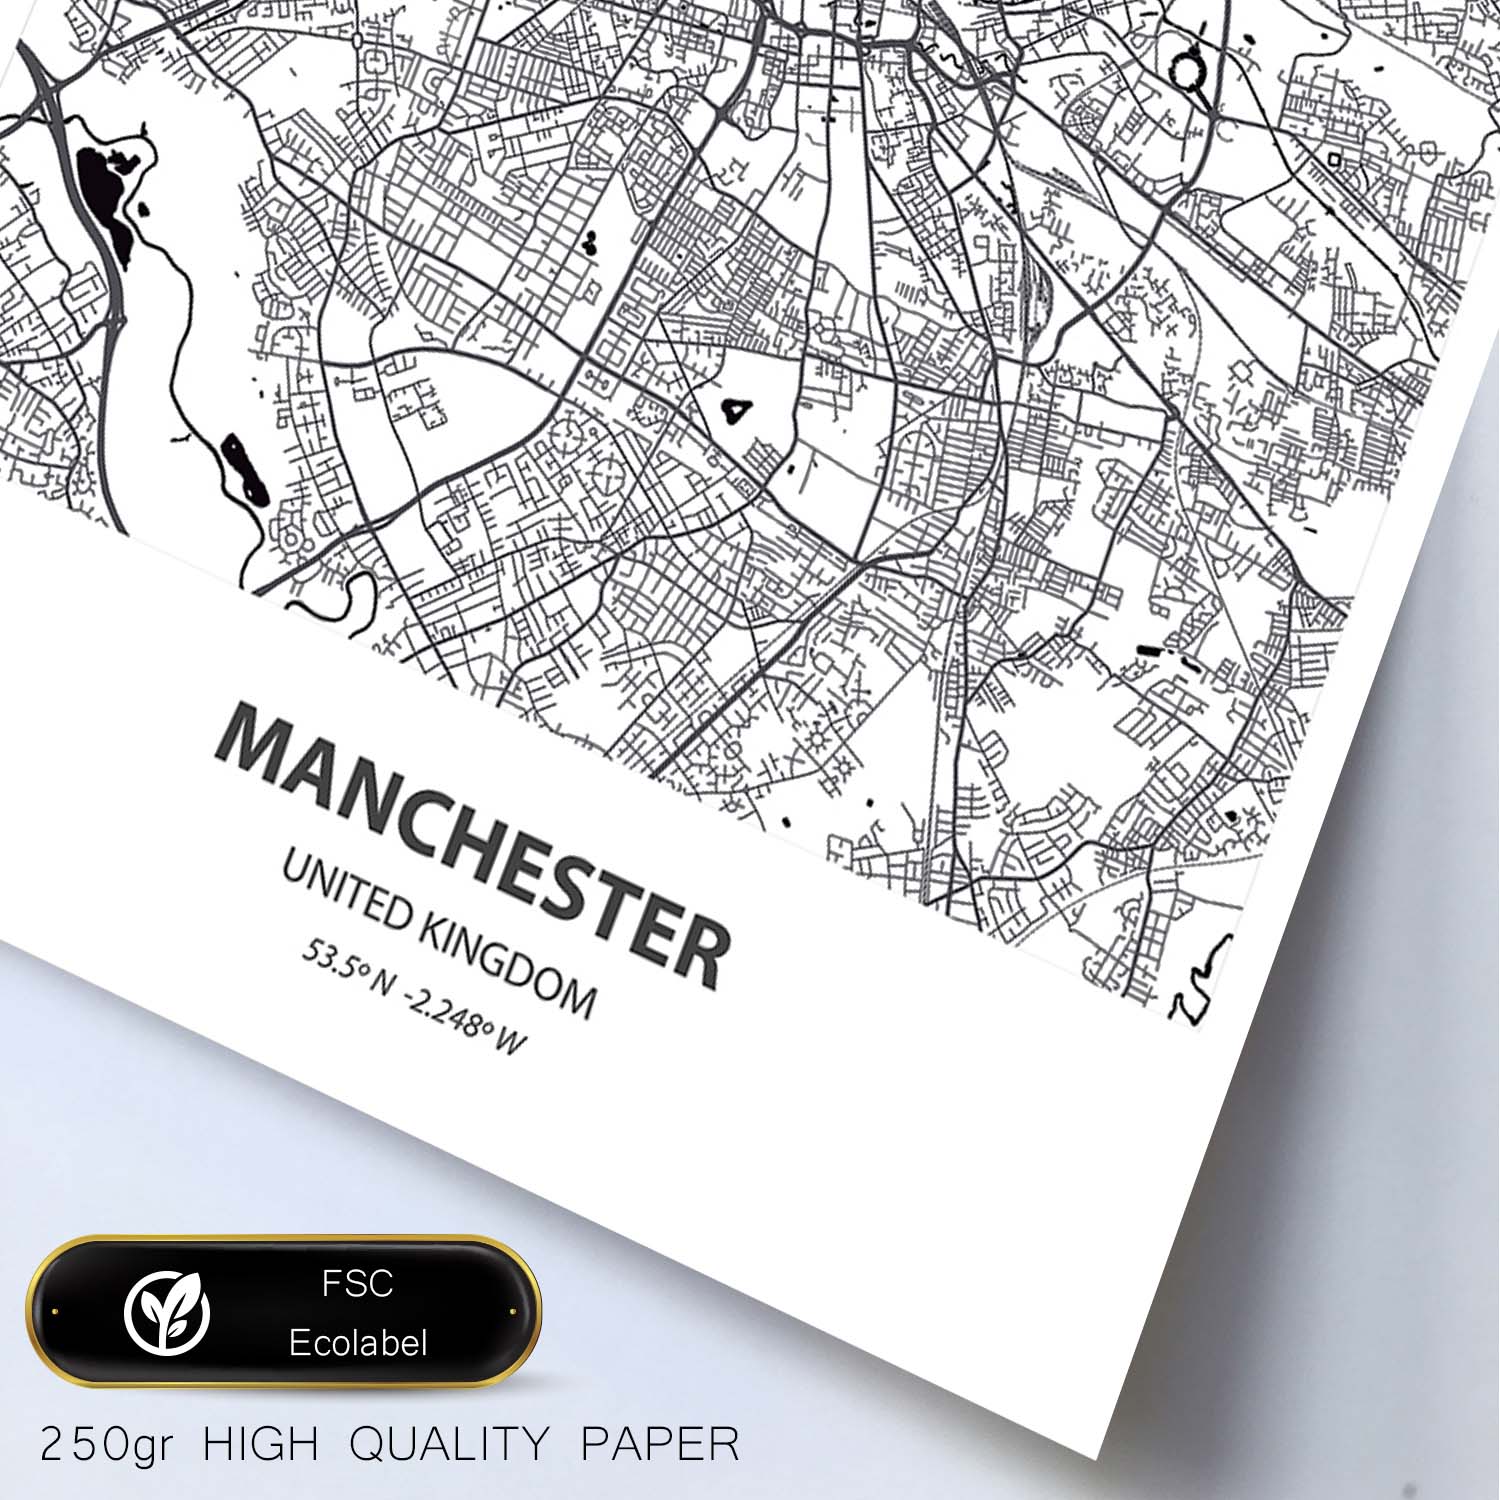 Poster con mapa de Manchester - Reino Unido. Láminas de ciudades de Reino Unido con mares y ríos en color negro.-Artwork-Nacnic-Nacnic Estudio SL